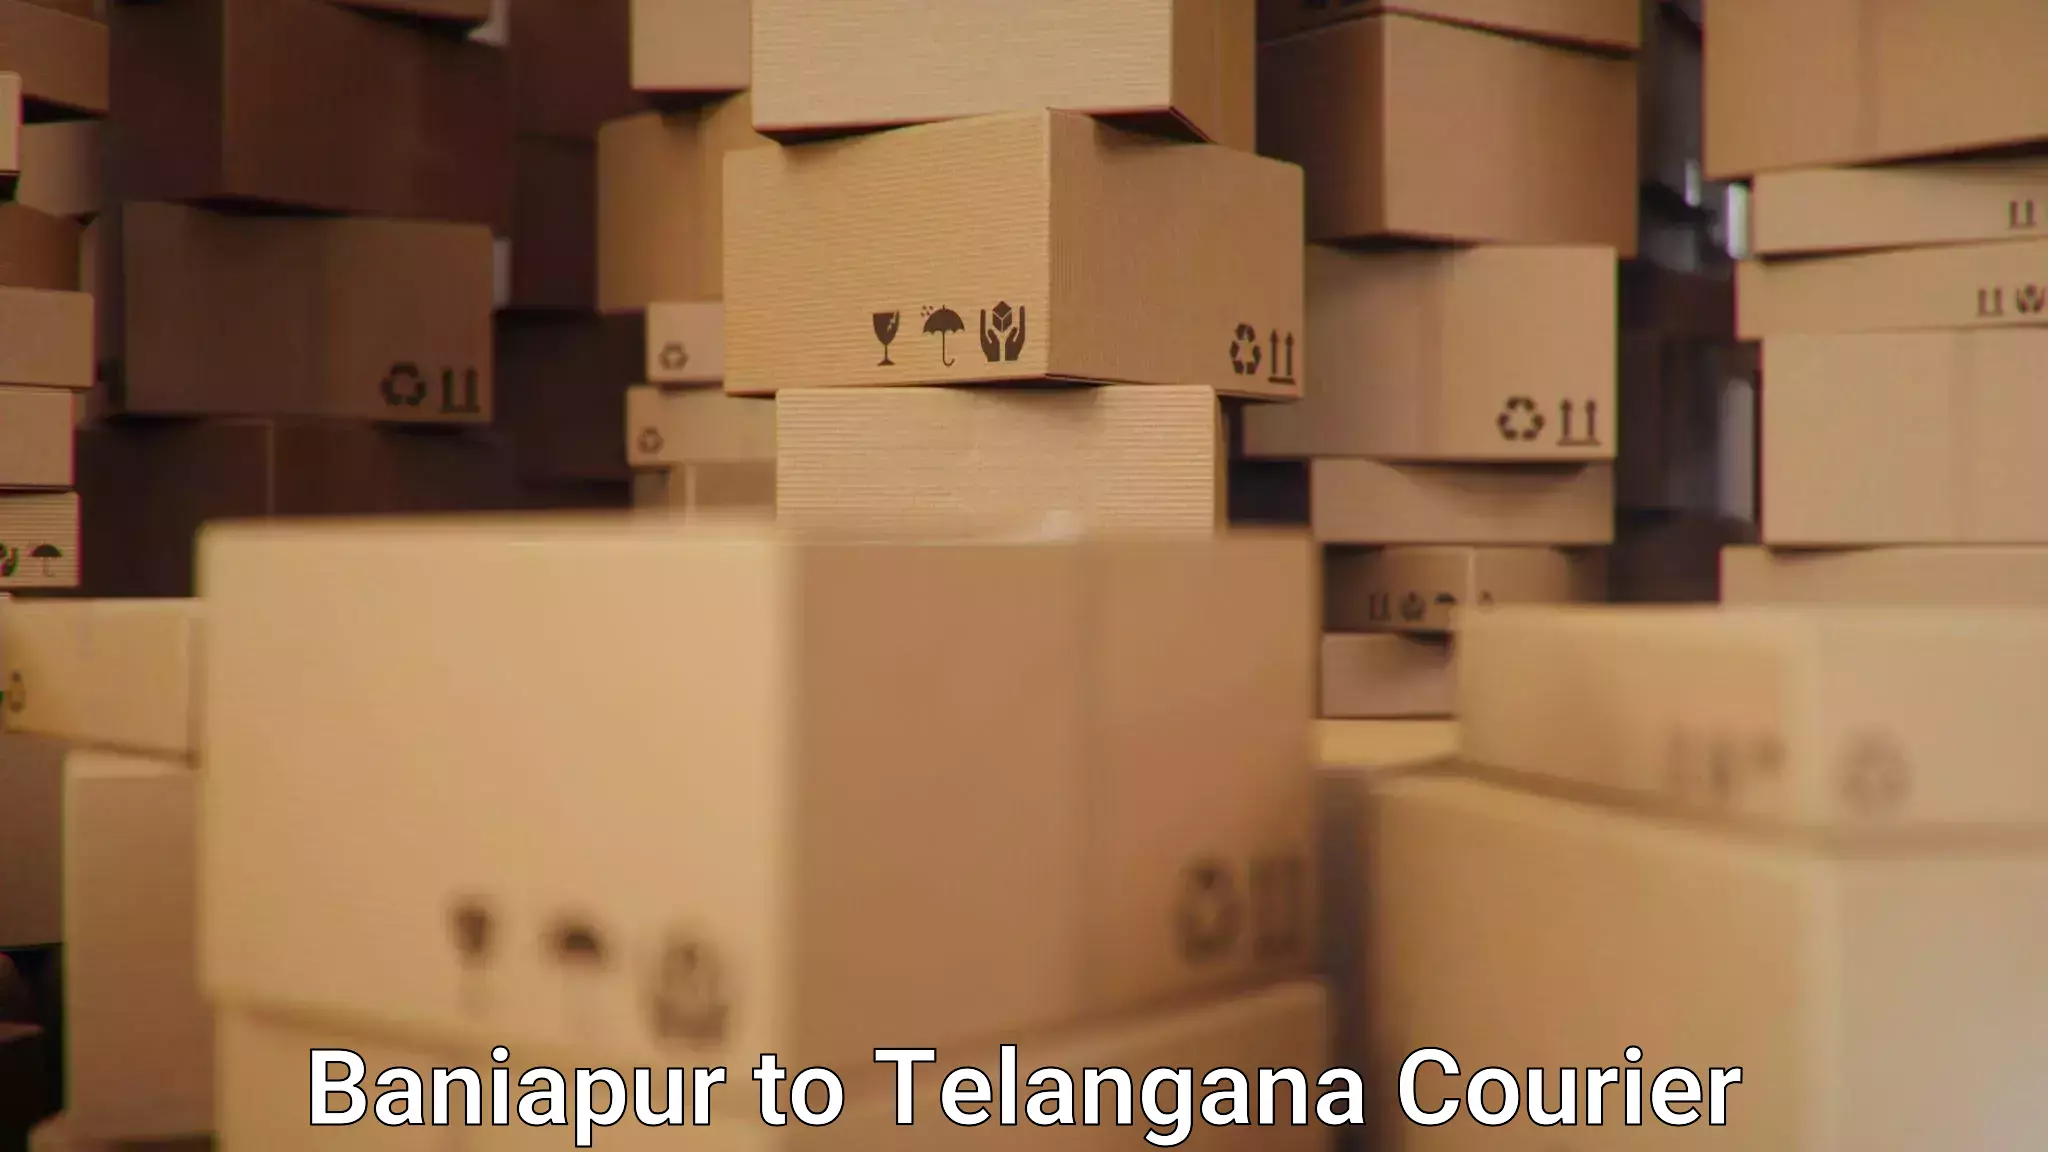 Customer-centric shipping Baniapur to Netrang